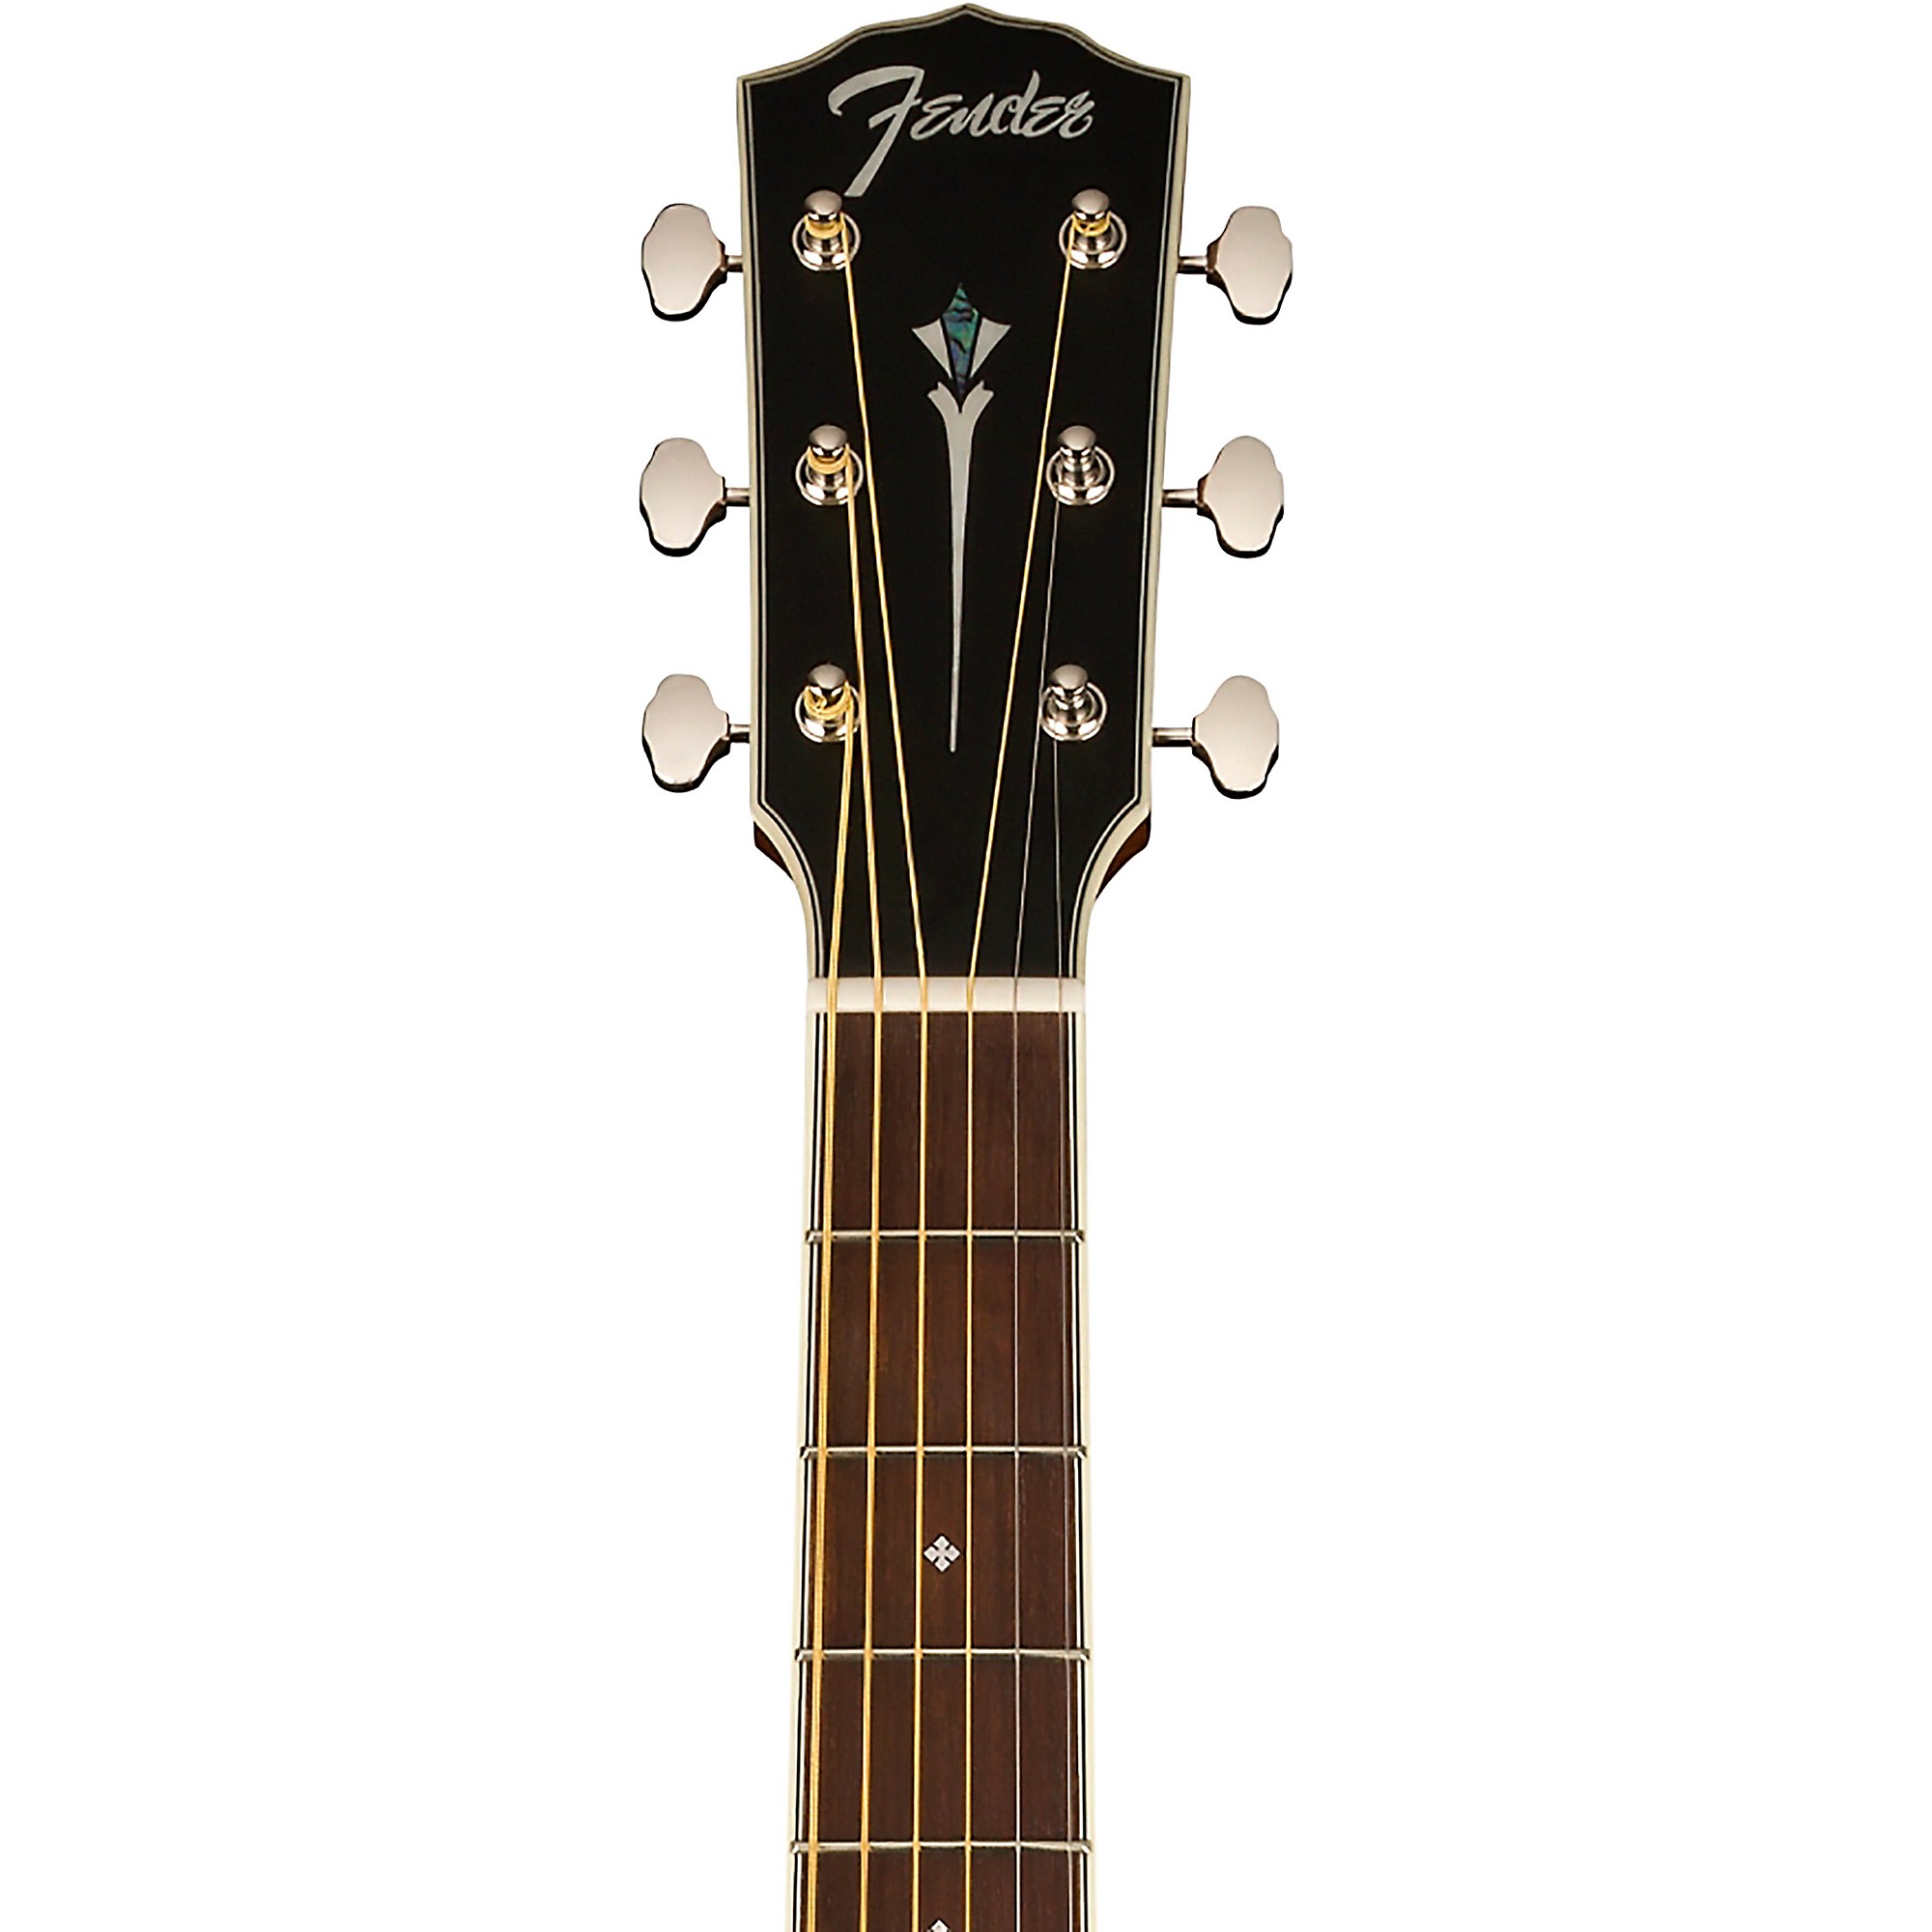 Акустически-электрическая гитара Fender Paramount PS-220E Parlor Aged Cognac Burst акустическая гитара fender pd 220e mahagony aged cognac burst